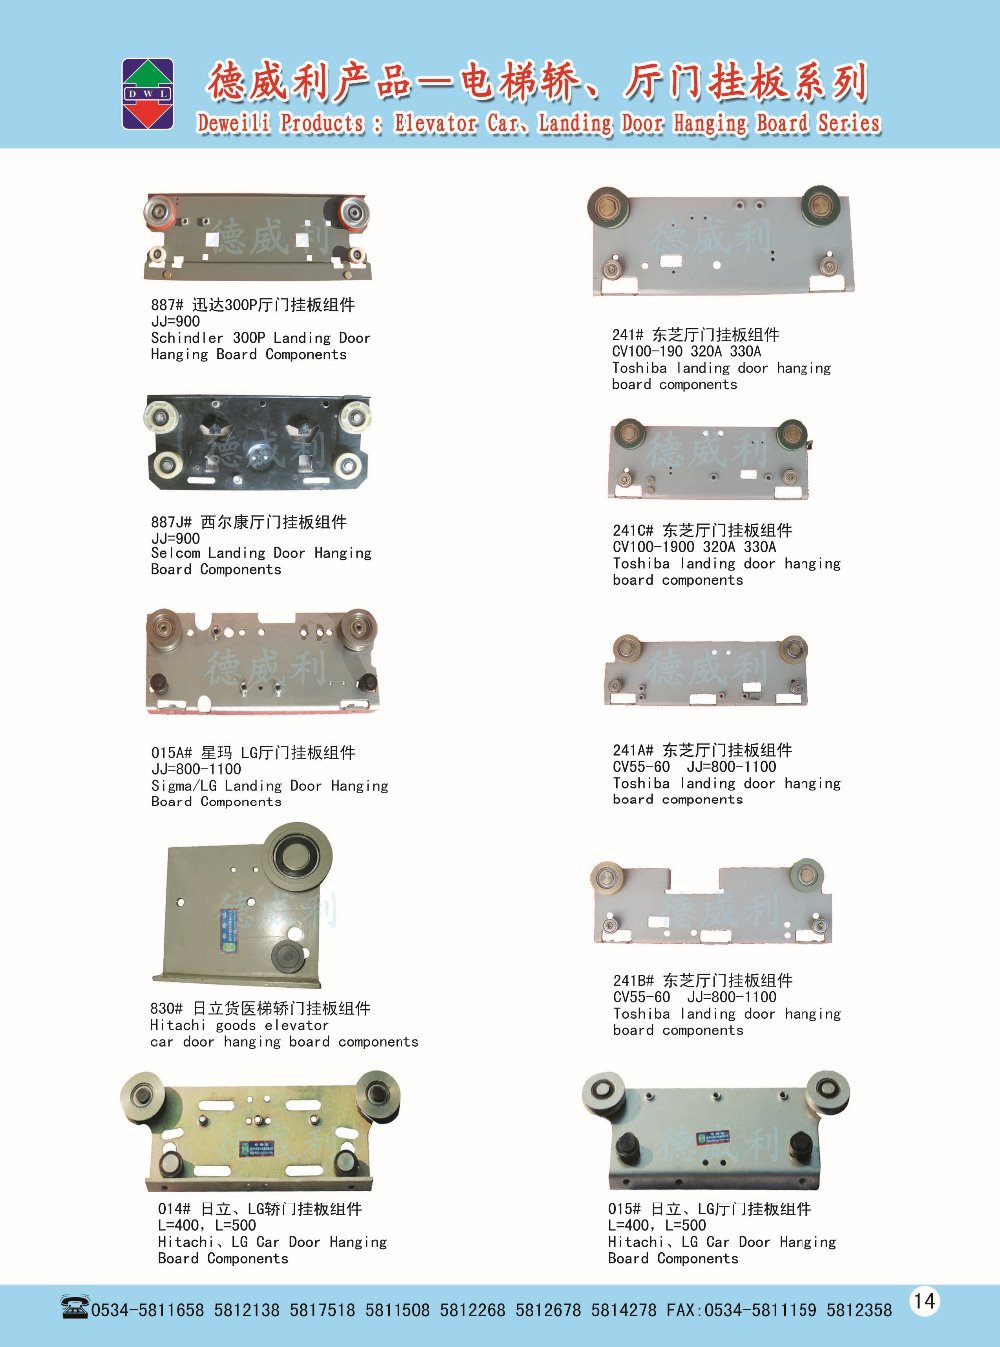 Hitachi Landing Door Hanging Board Components for Elevator parts